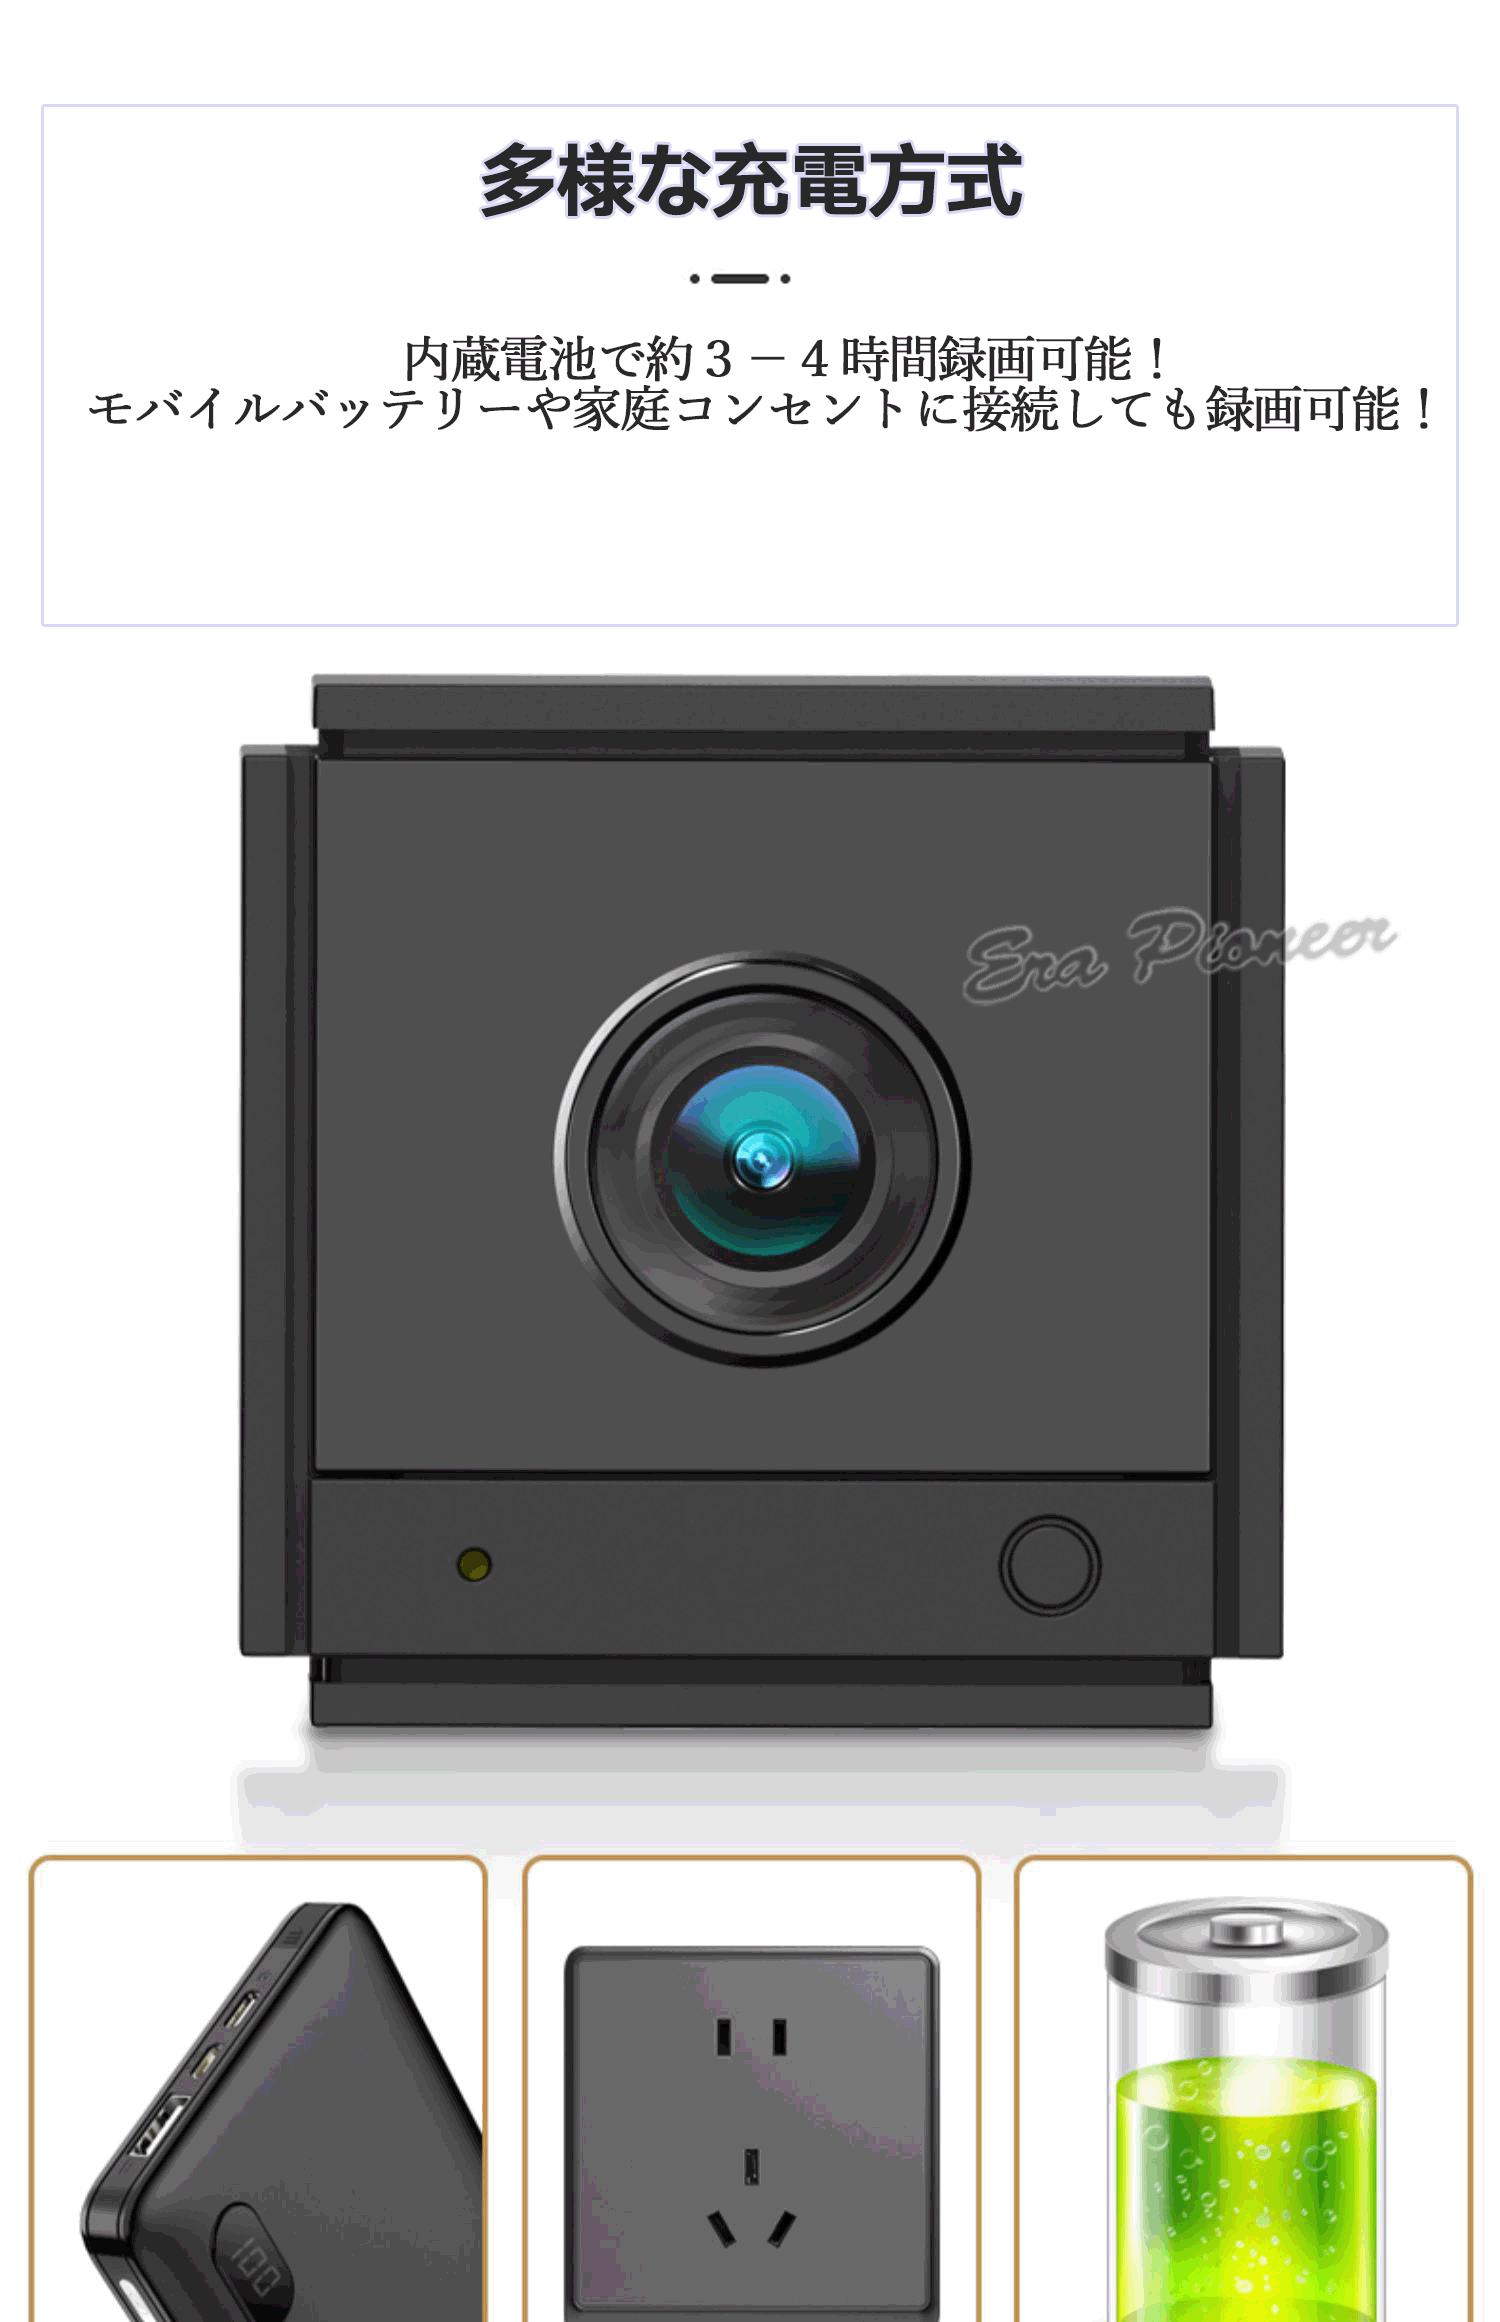 防犯カメラ 小型 長時間録画 ワイヤレス WiFi 動体検知 300万画素 SDカード録画 監視カメラ 不可視赤外線 双方向音声  :wx16:Era-Pioneer-Store 通販 